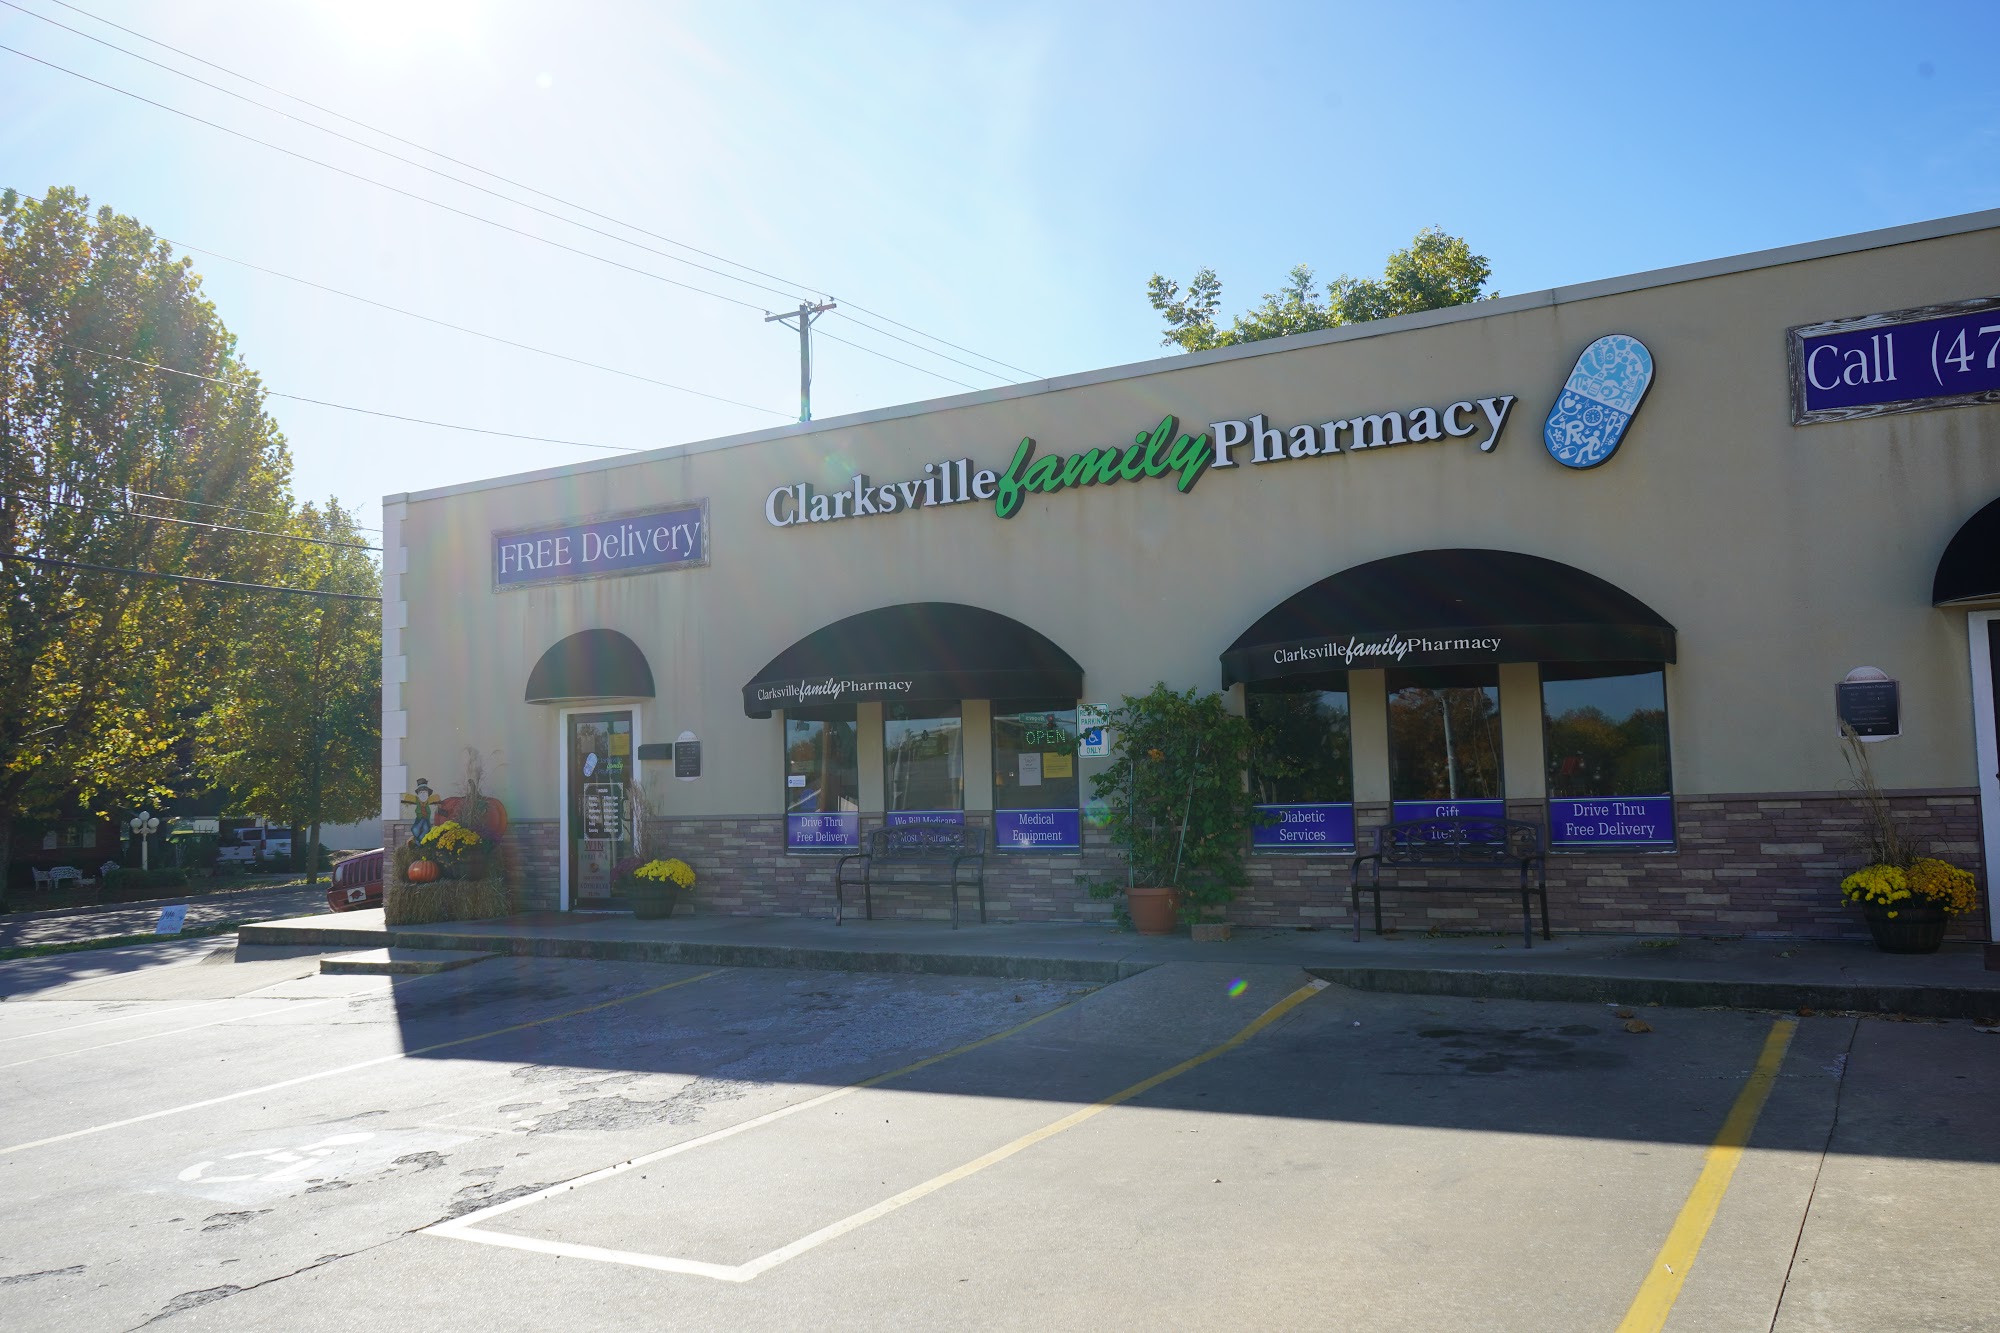 Clarksville Family Pharmacy